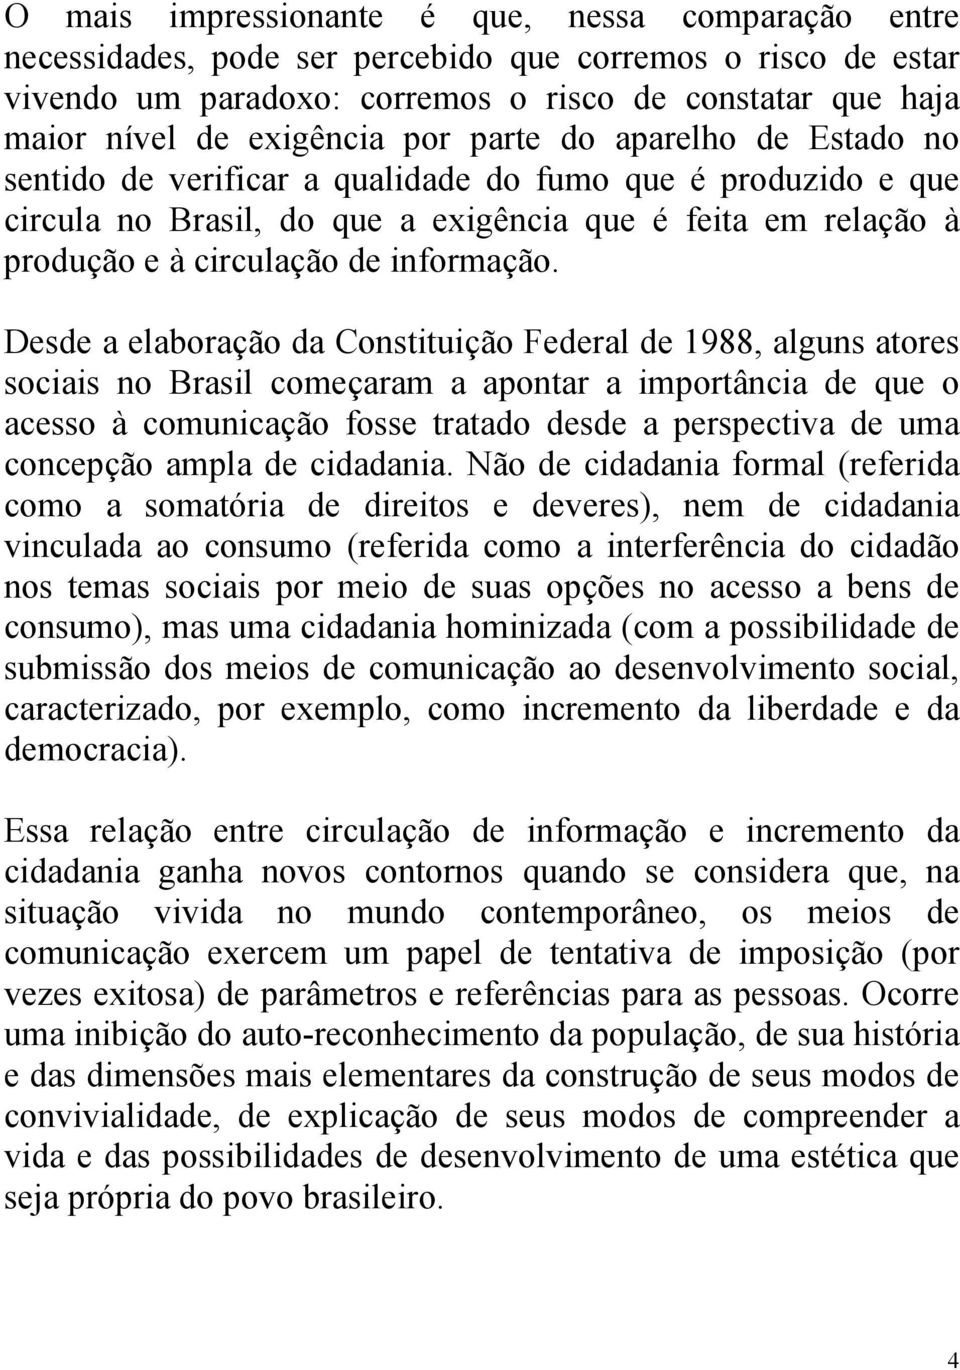 Desde a elaboração da Constituição Federal de 1988, alguns atores sociais no Brasil começaram a apontar a importância de que o acesso à comunicação fosse tratado desde a perspectiva de uma concepção